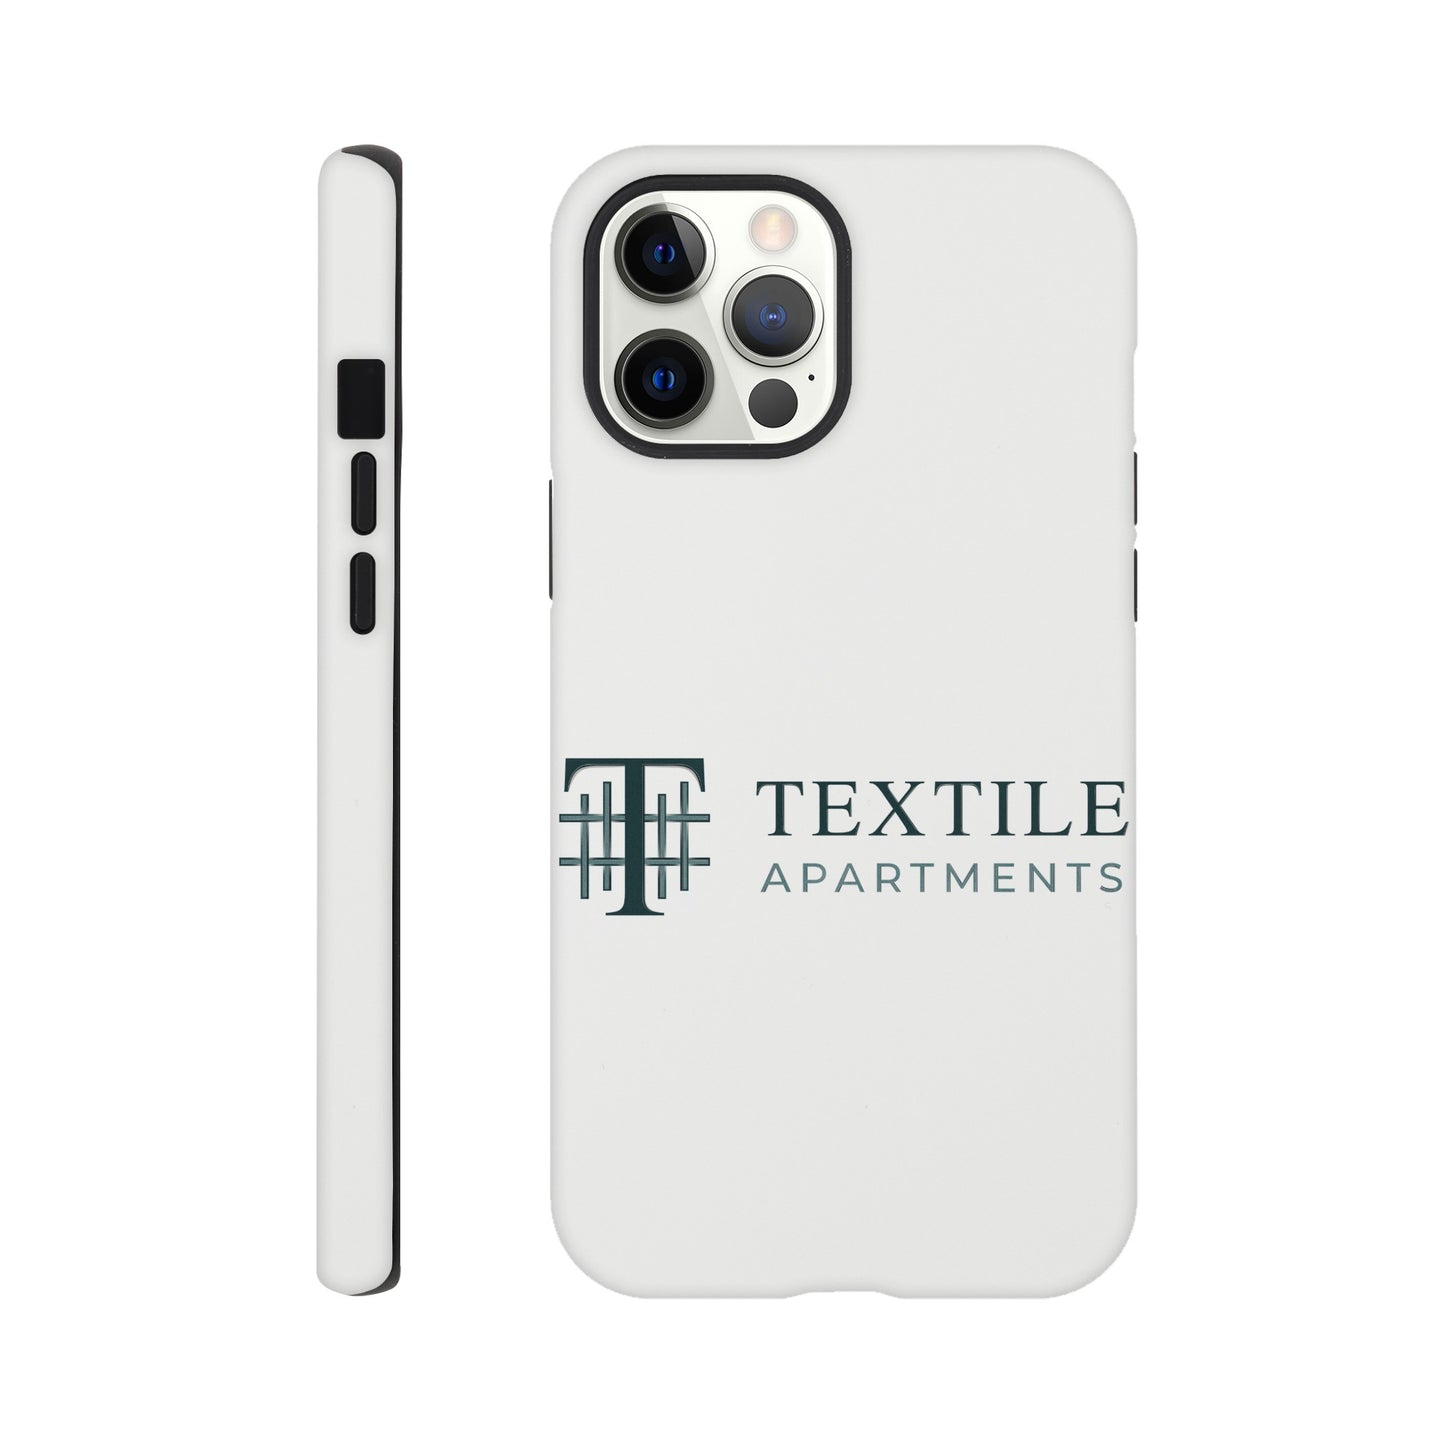 Textile Apartments - Tough case